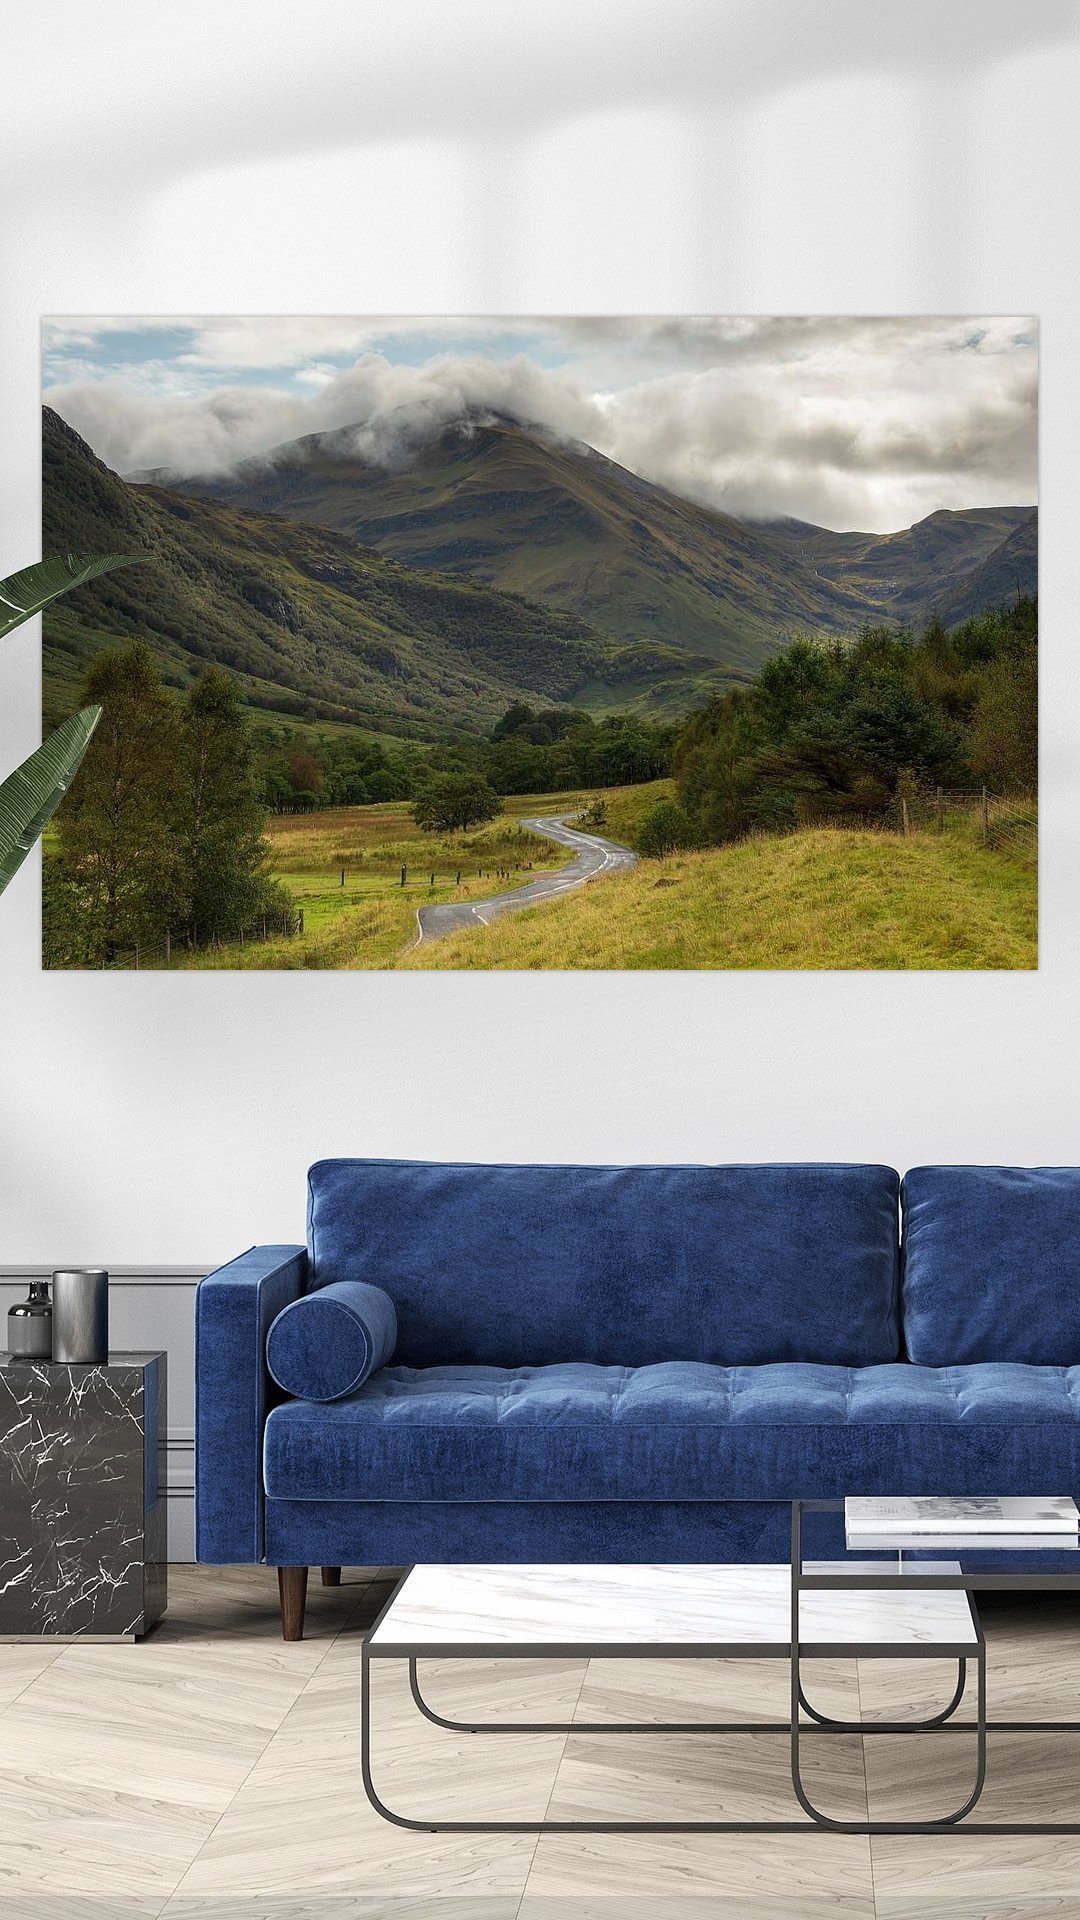 Werk aan de Muur-743622-Glen Nevis Schotland-Marcel Kerdijk-1080x1920-Livingroom - Touch of Blue-instagramReel.jpg